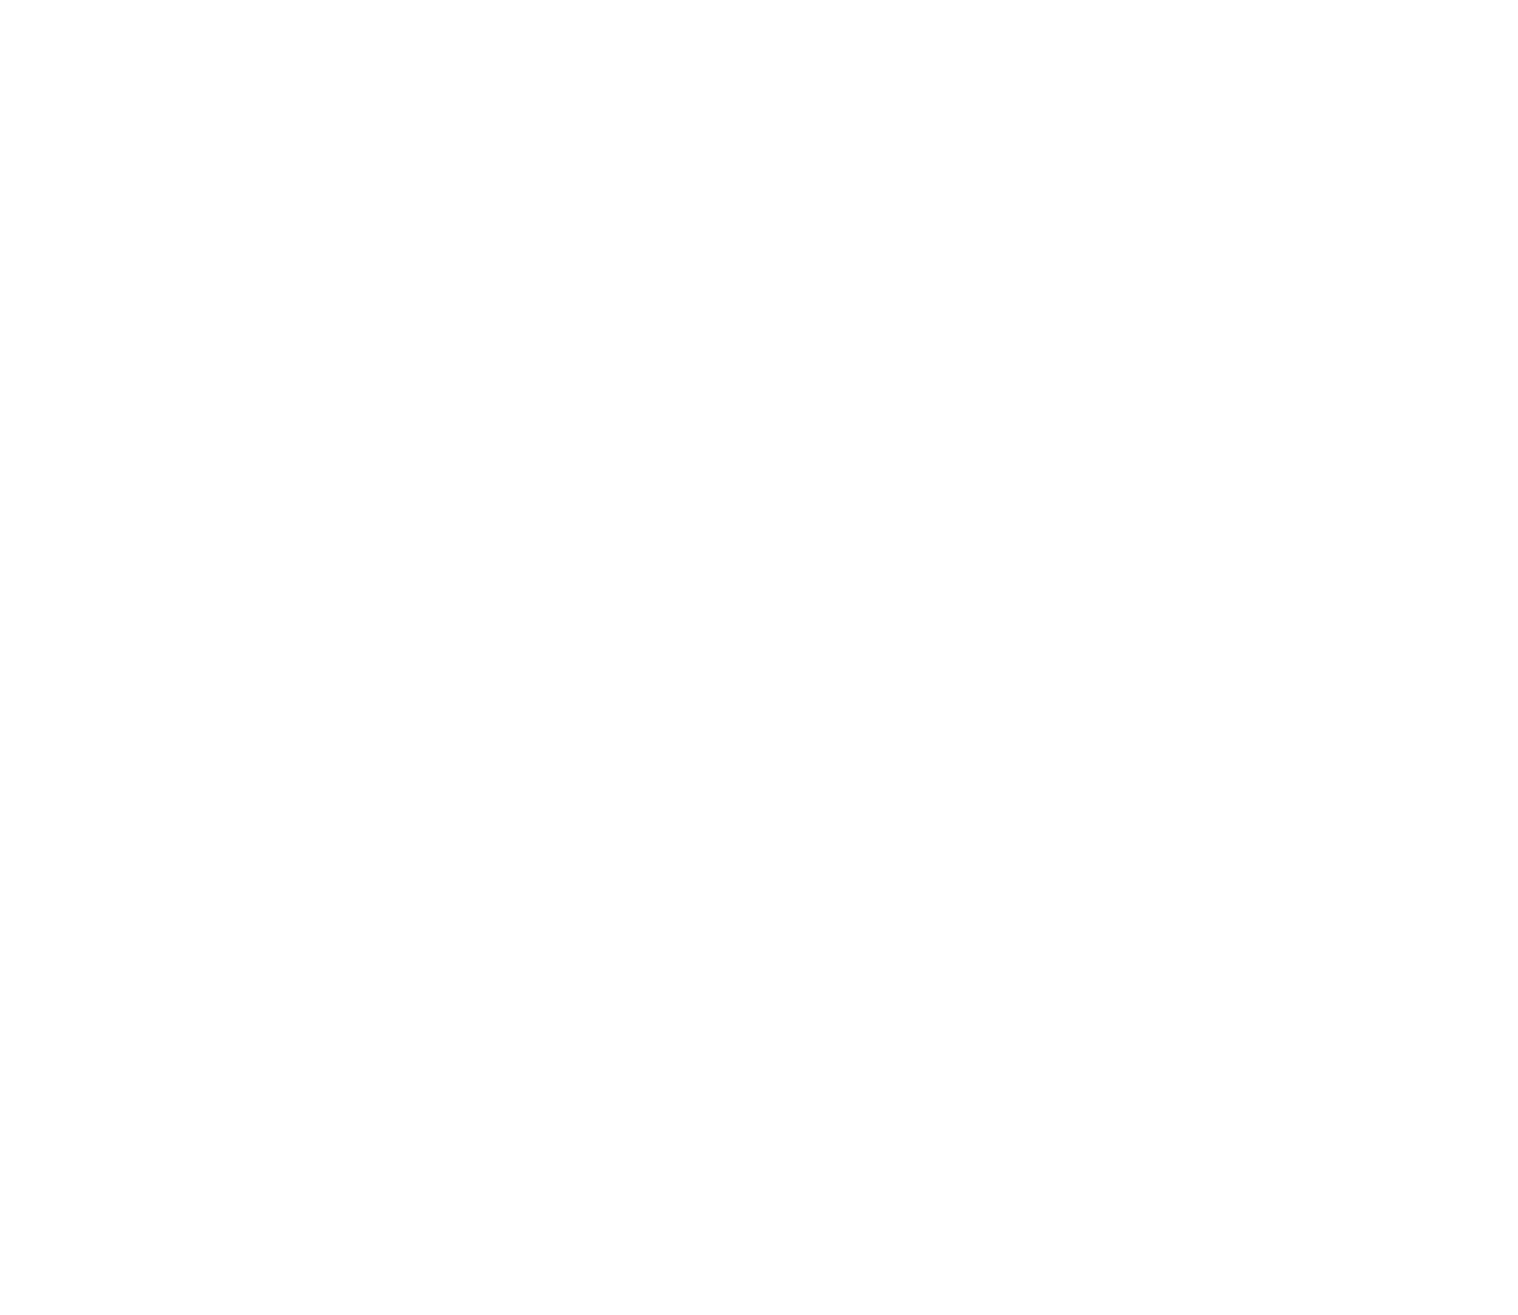 InterCure logo pour fonds sombres (PNG transparent)